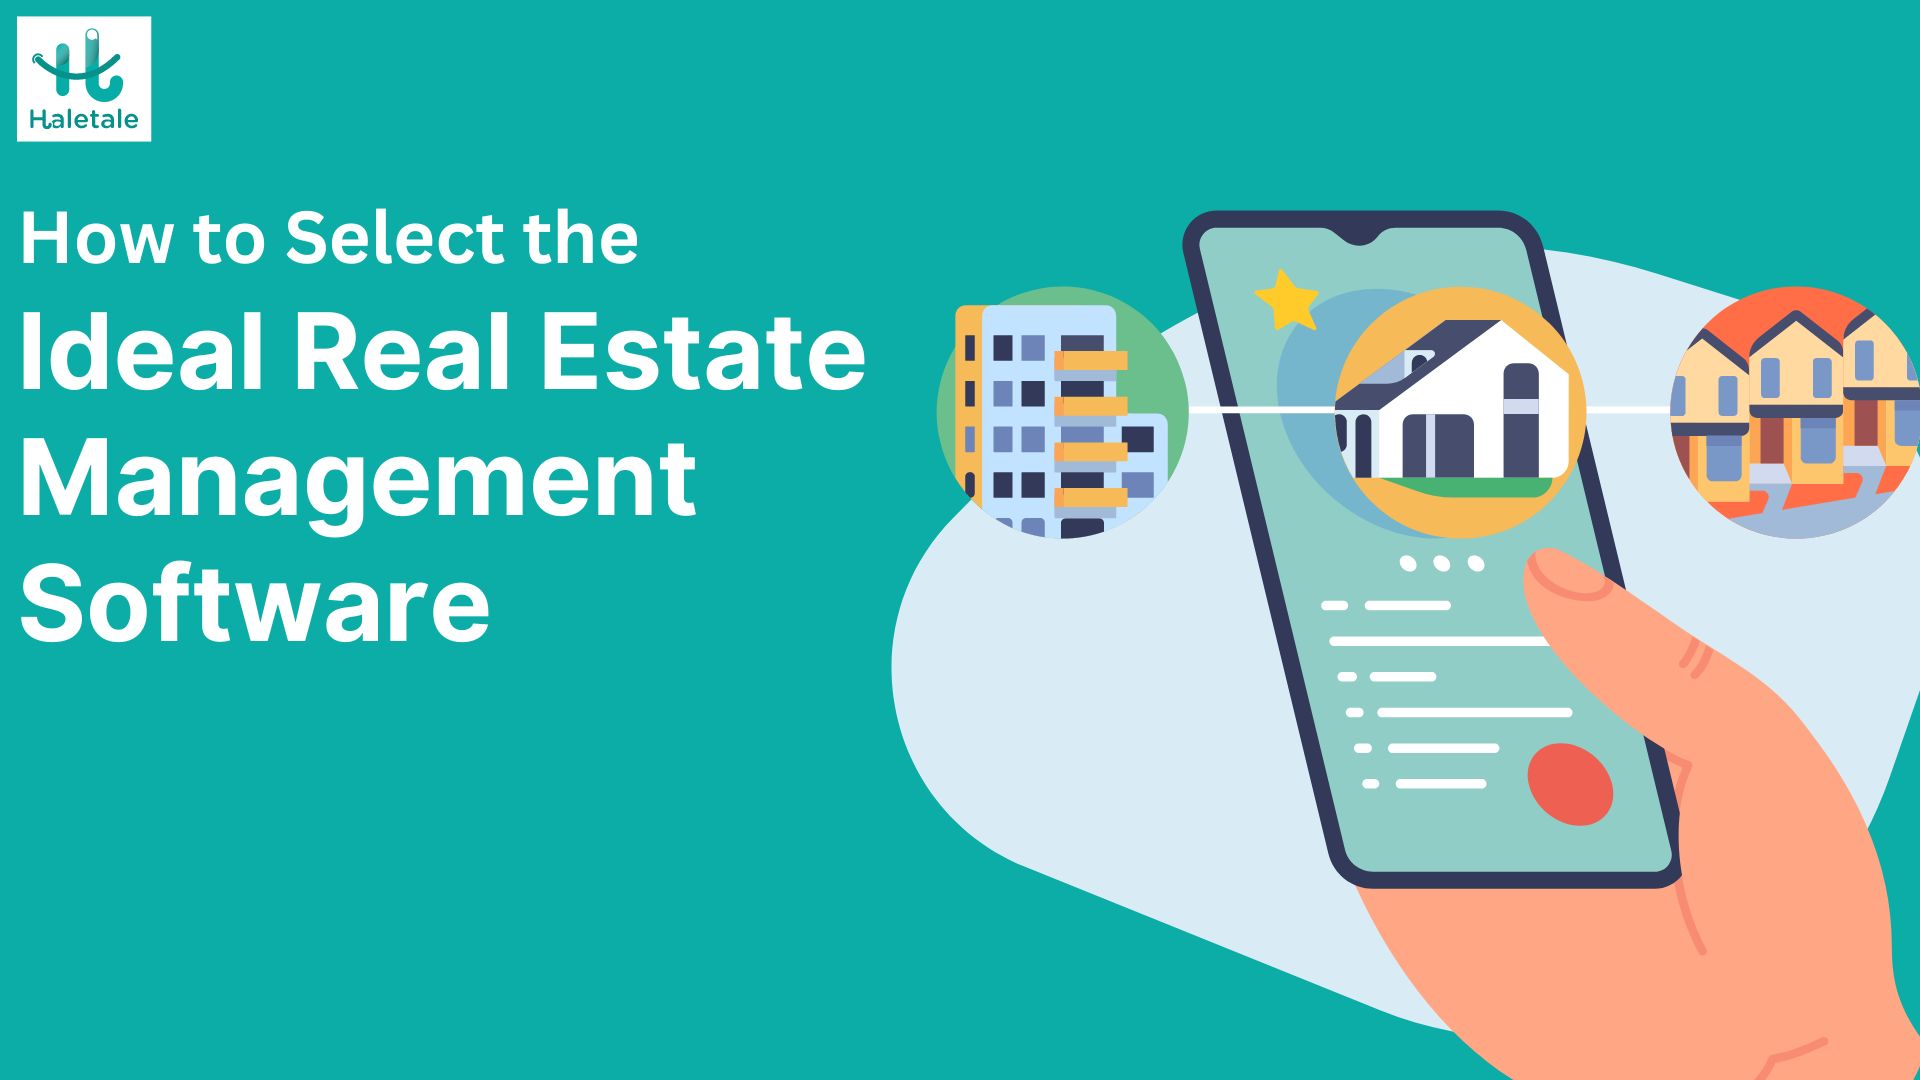 Real Estate Management Software